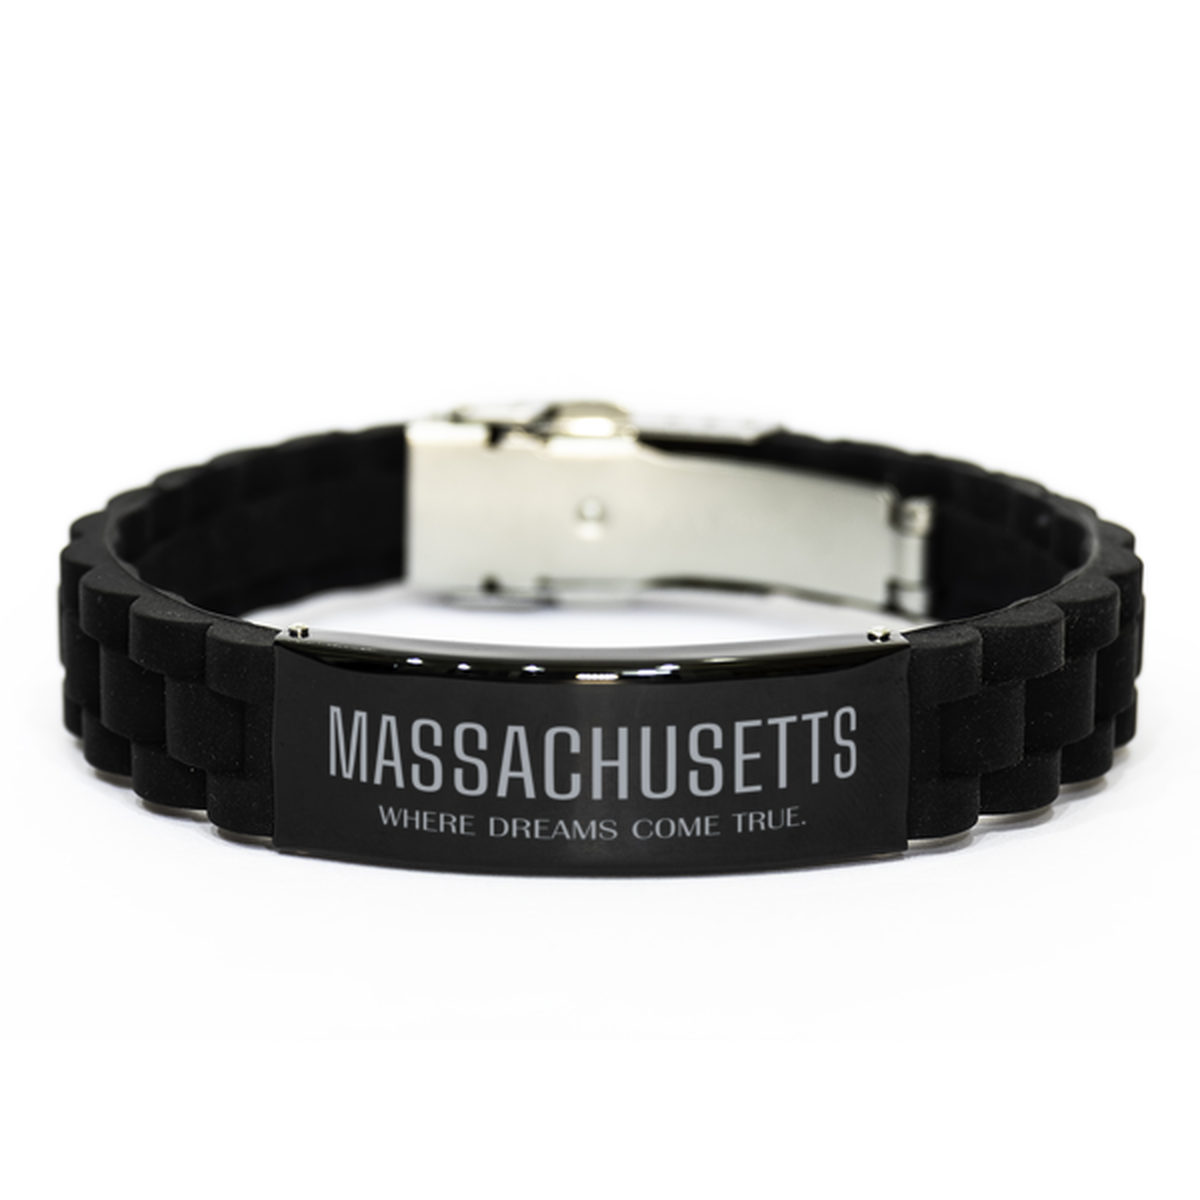 Love Massachusetts State Black Glidelock Clasp Bracelet, Massachusetts Where dreams come true, Birthday Inspirational Gifts For Massachusetts Men, Women, Friends